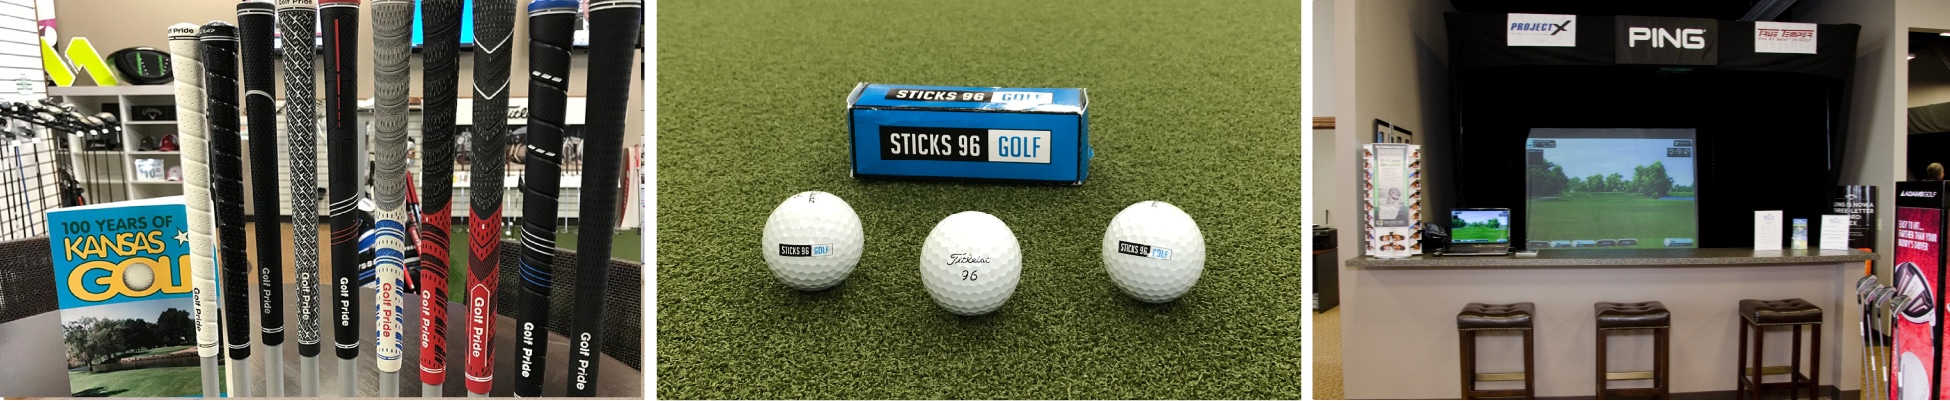 Contact IA - Contact Us - Sticks 96 Golf